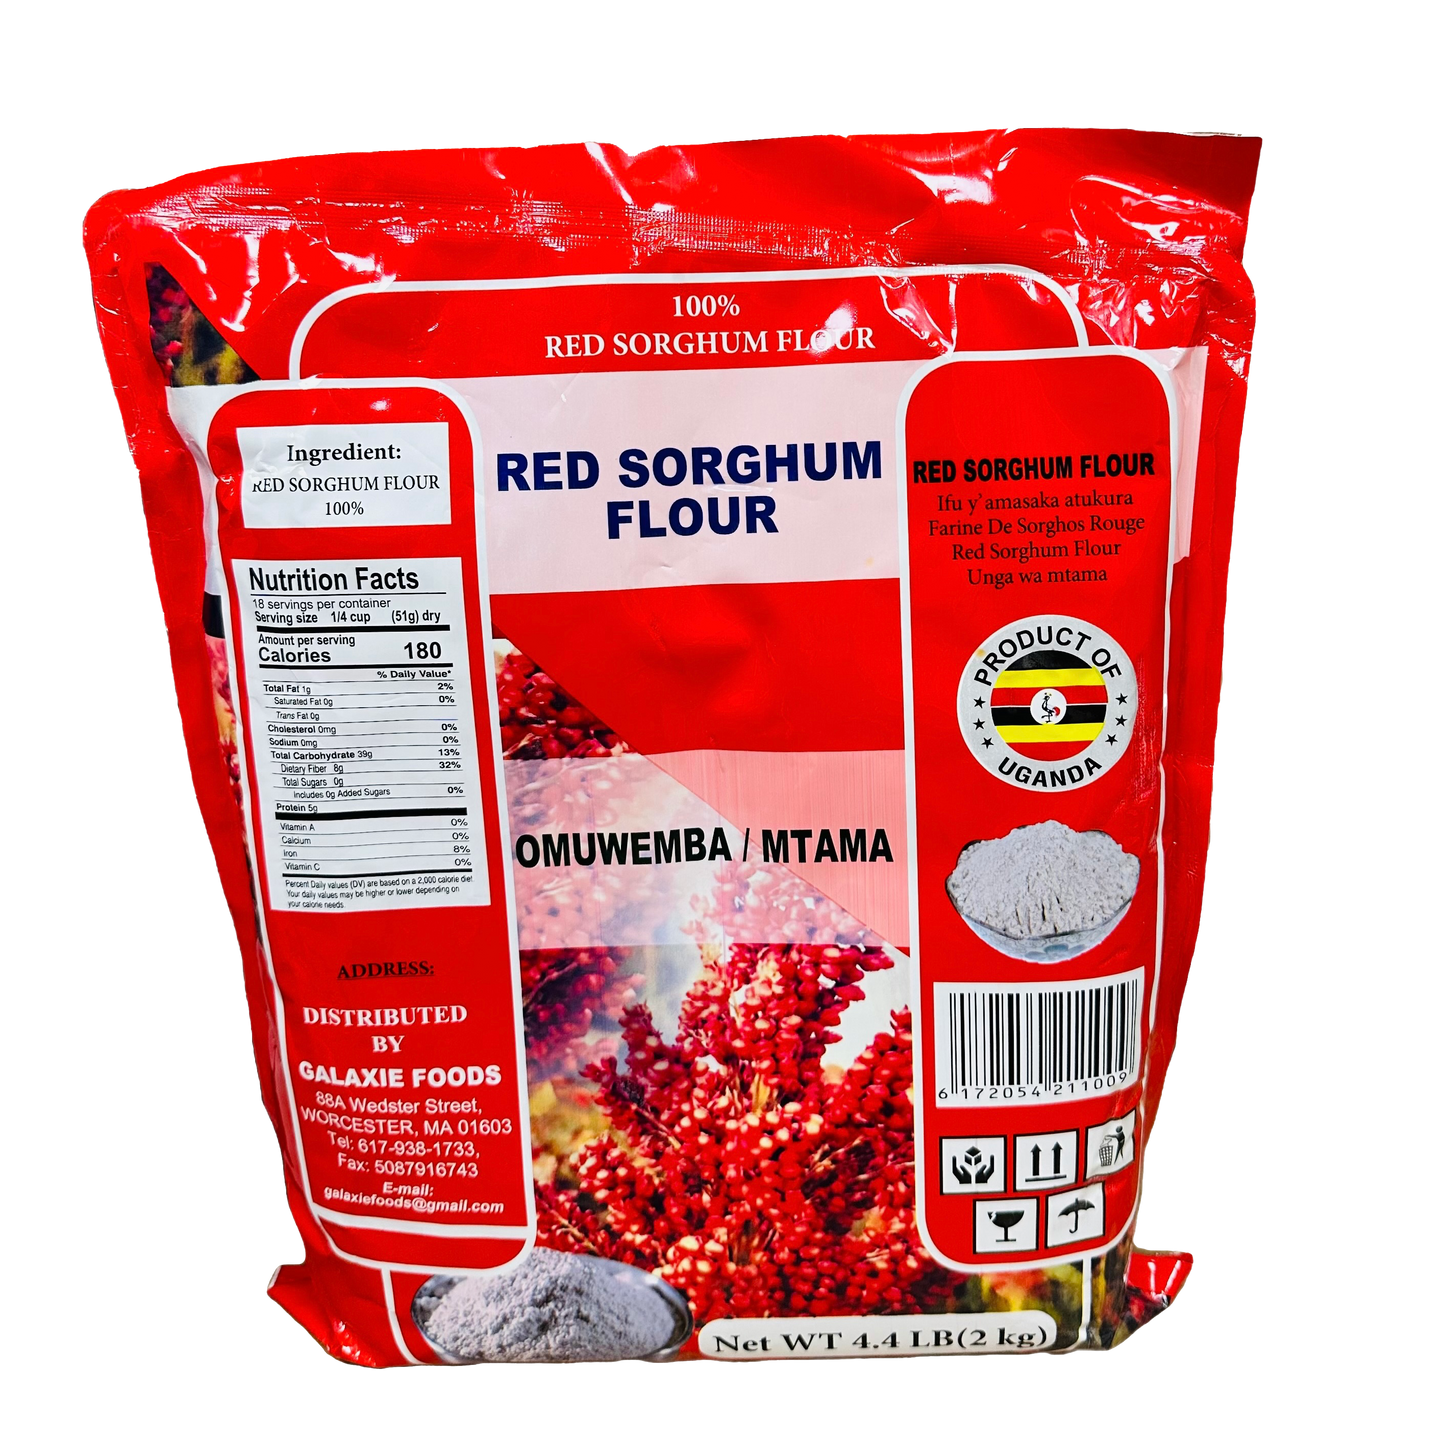 Red Sorghum Flour 4.4kg